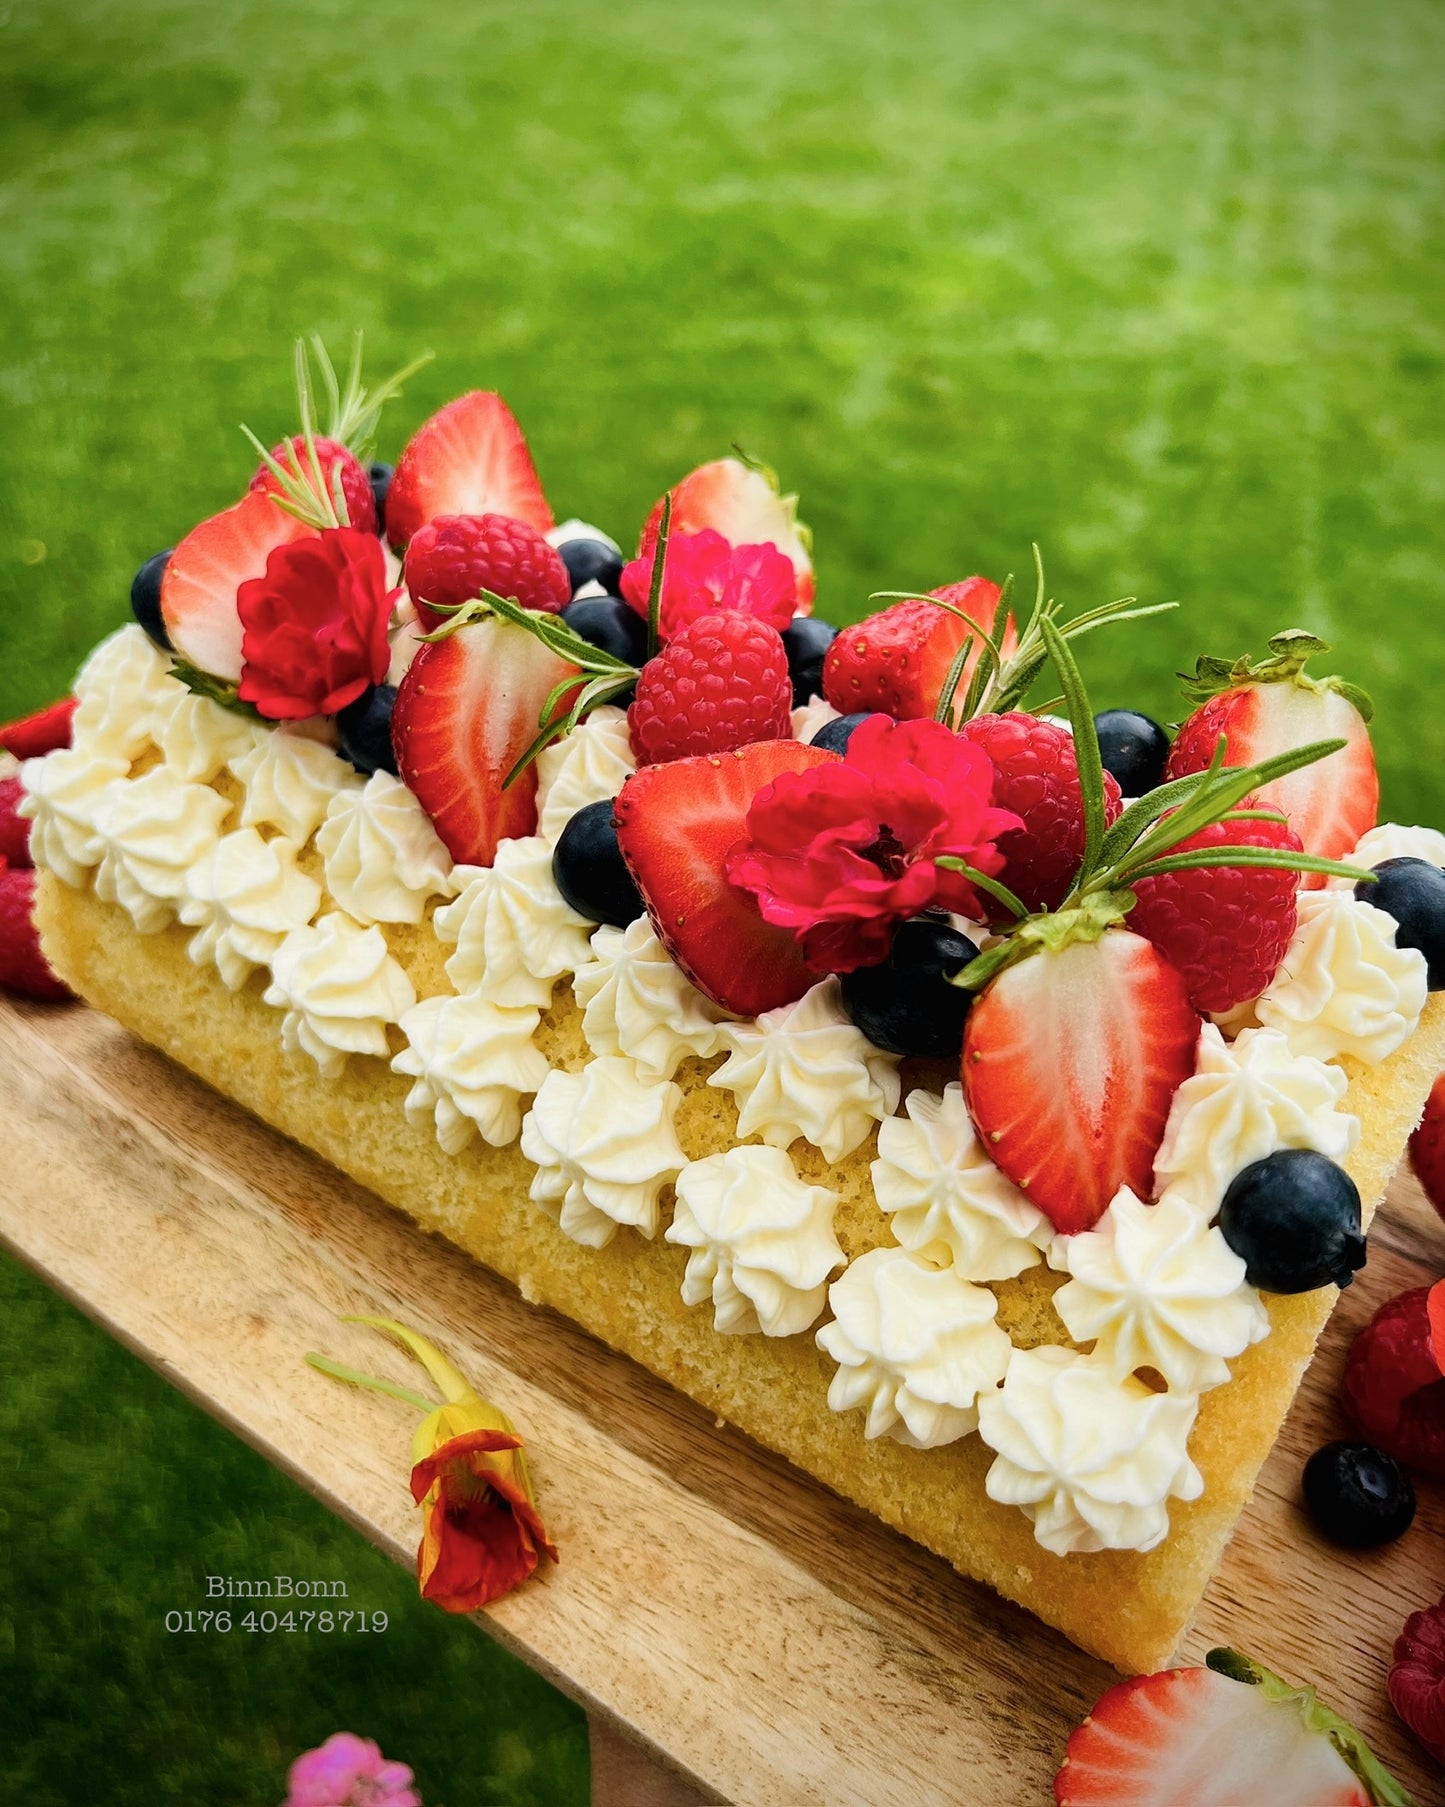 2. Biskuitrolle mit Erdbeerfüllung und feinster Joghurt-Mascarpone Creme 26 cm